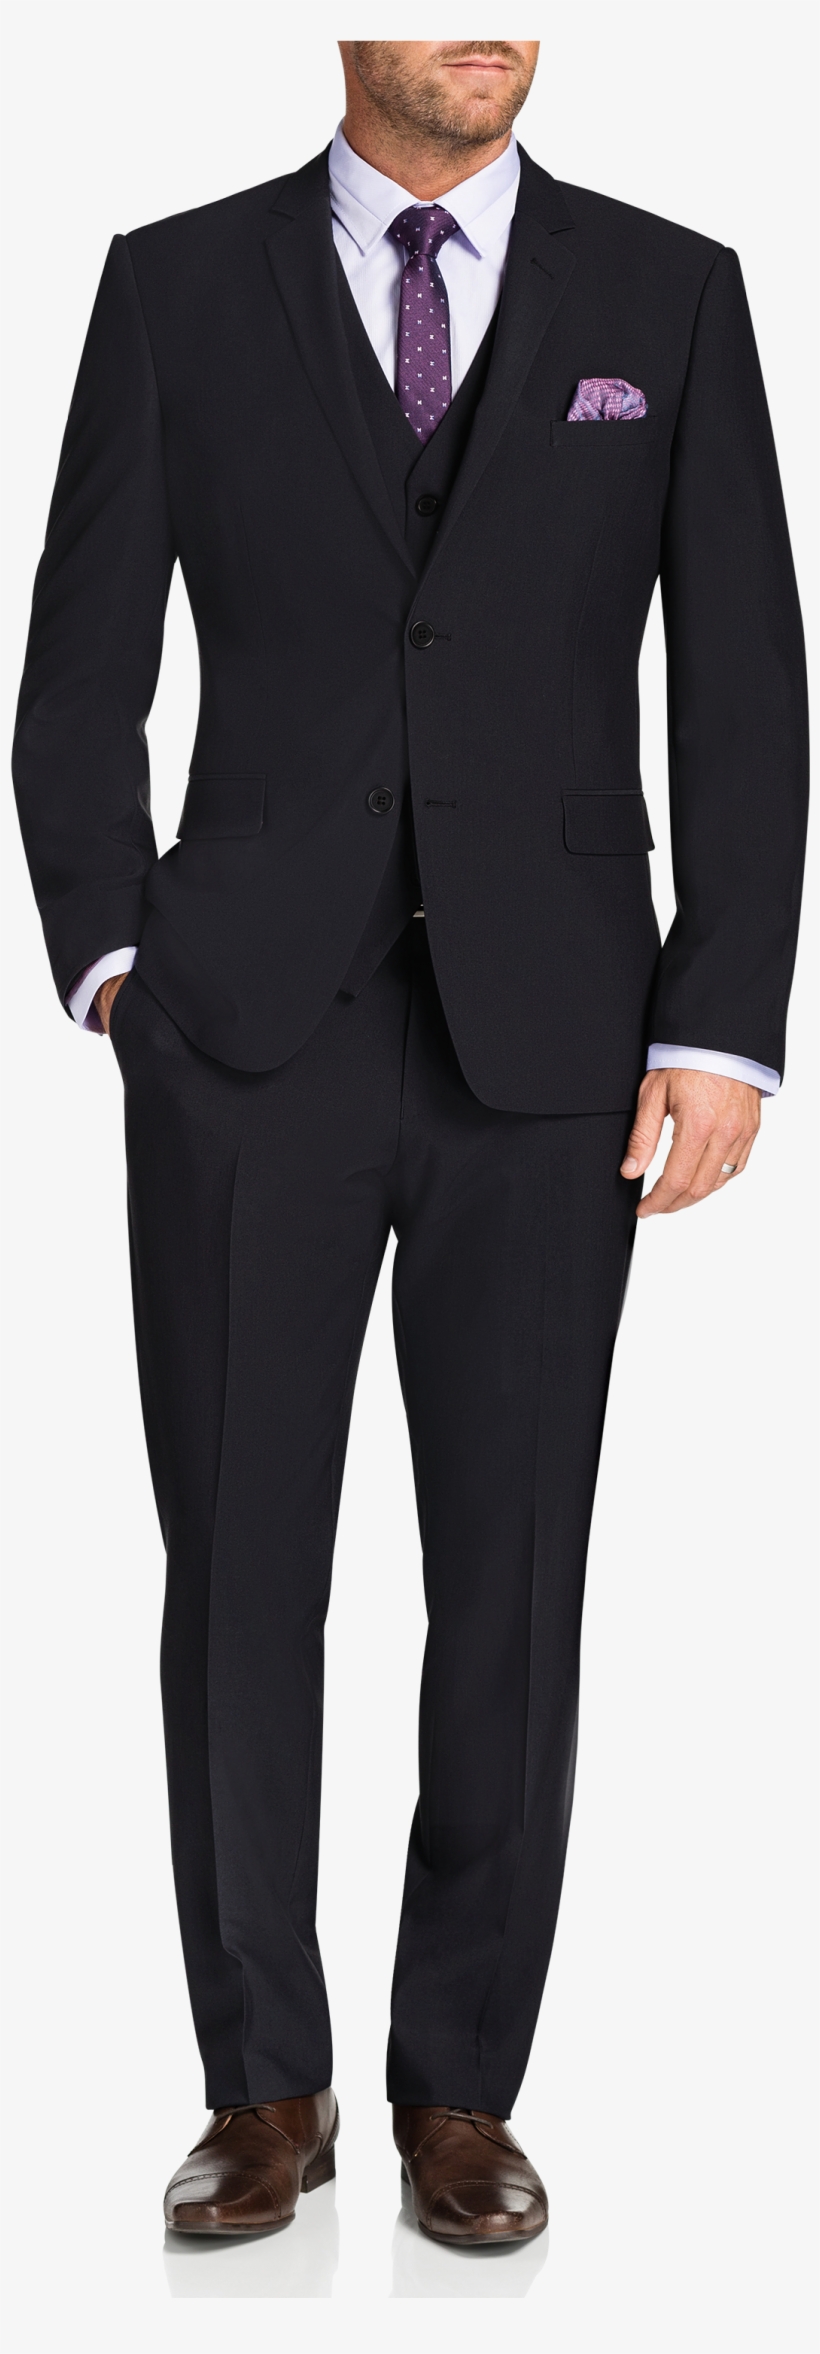 Ermenegildo Zegna Double Breasted Suit, transparent png #2491528